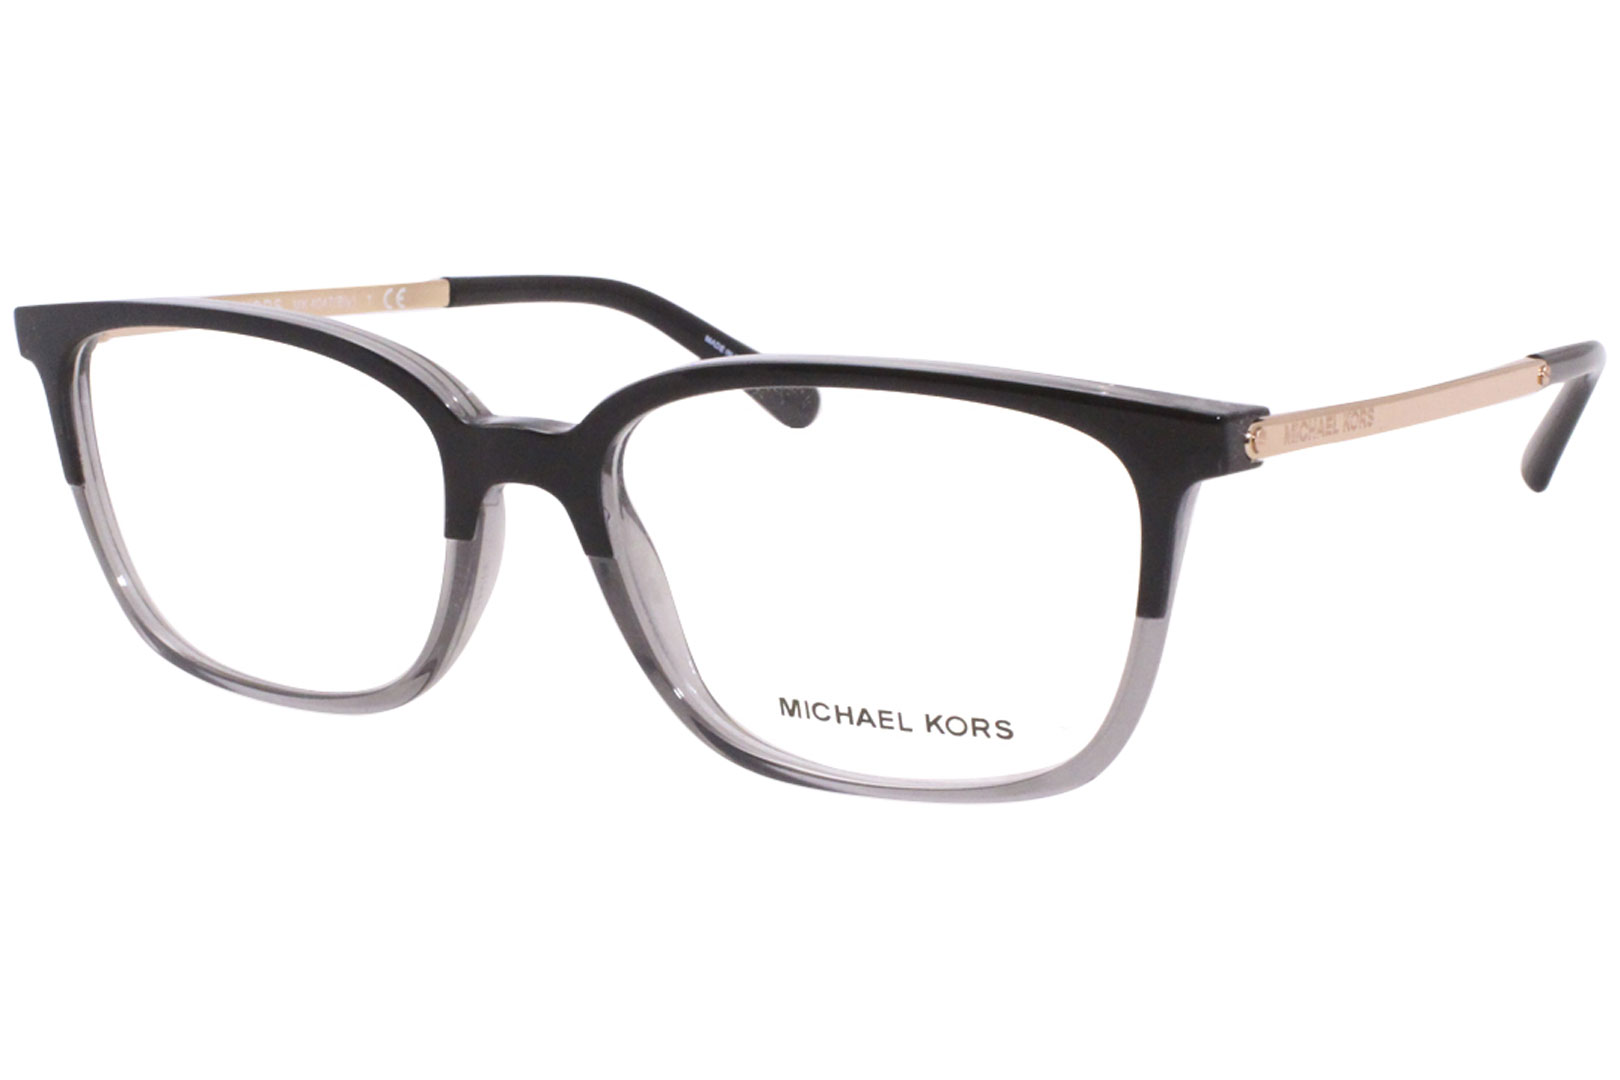 Michael Kors glasses frame 